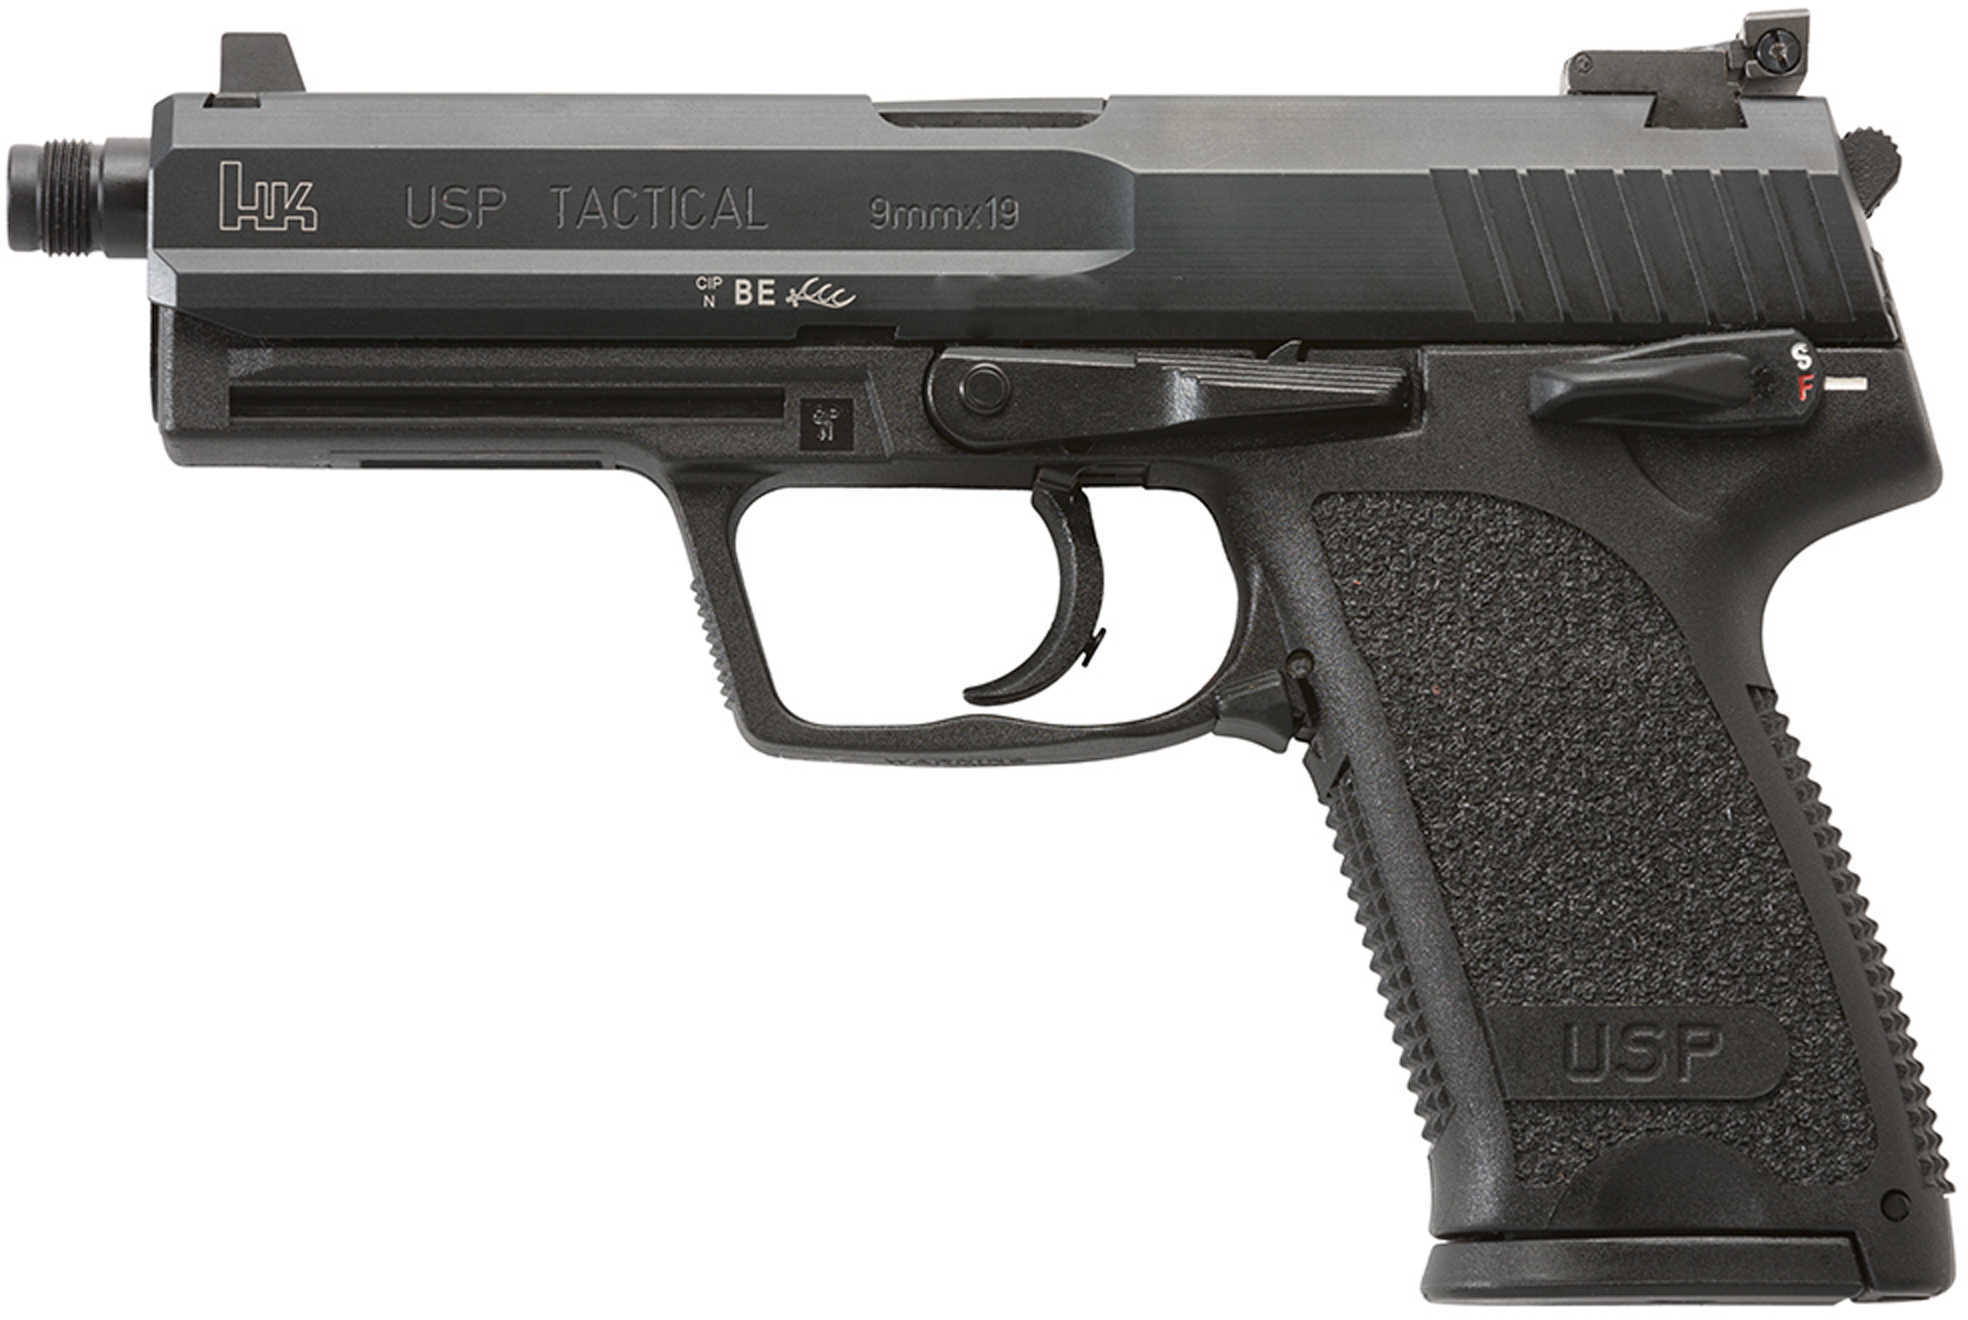 Pistol Heckler & Koch HK USP TAC Double 9mm Luger 4.9" 15+1 Polymer Grip Black M709001TA5